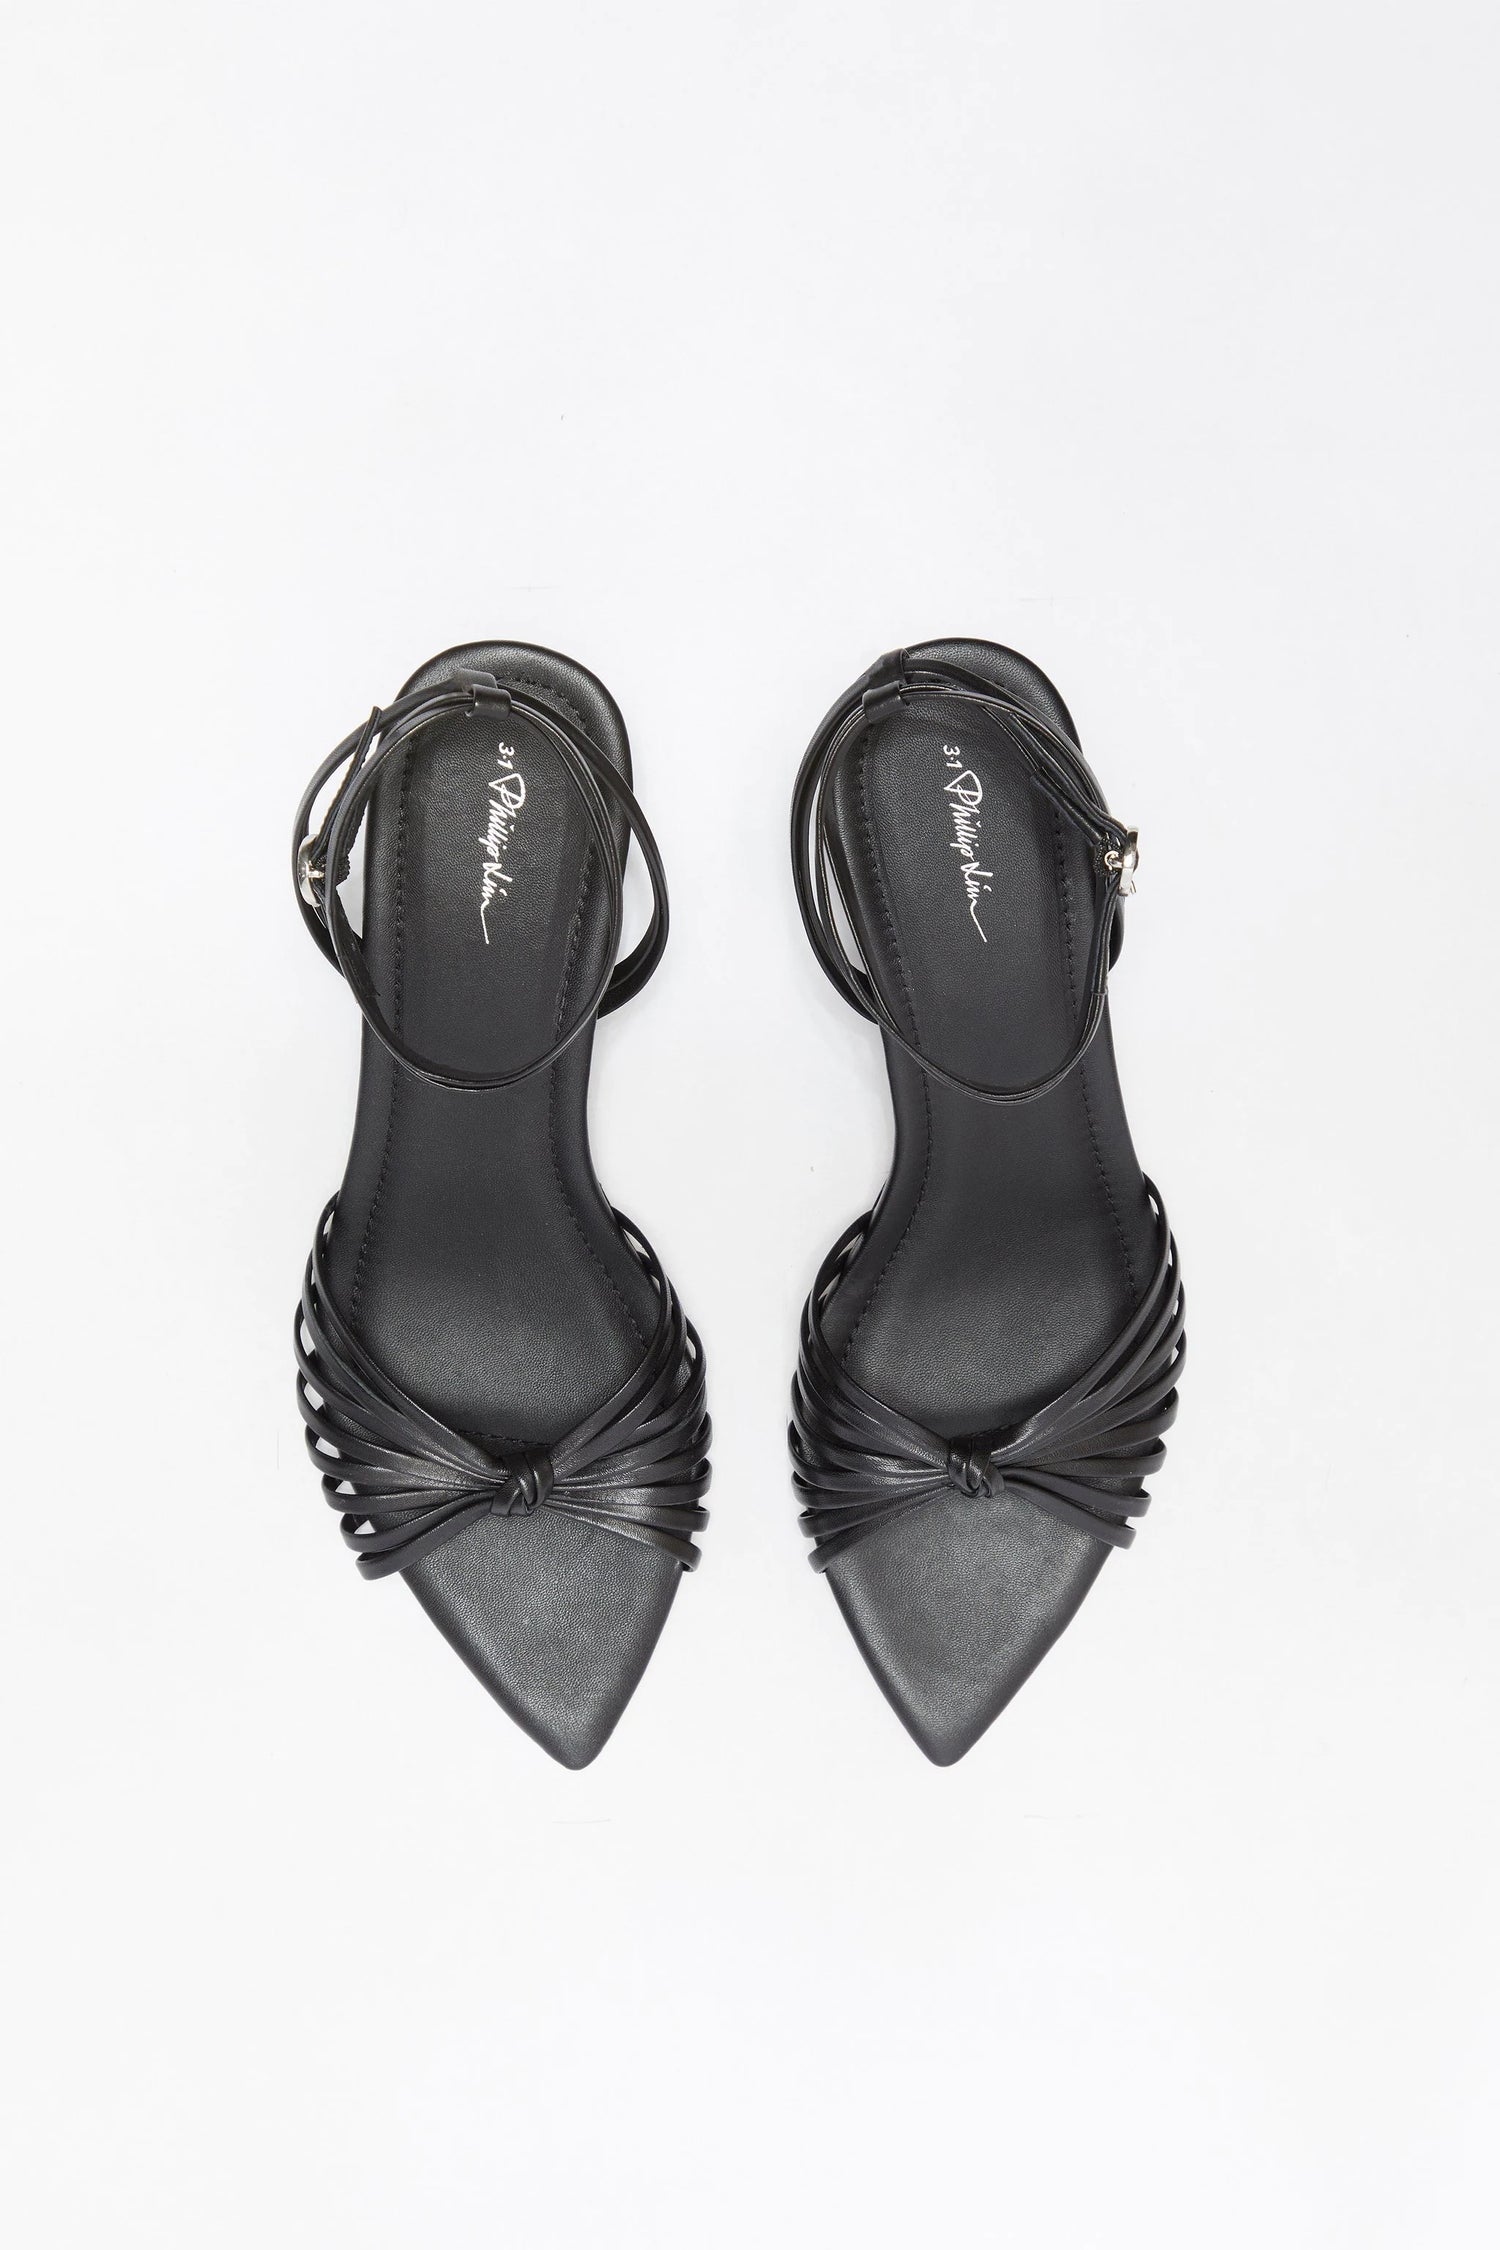 Verona sandals, black